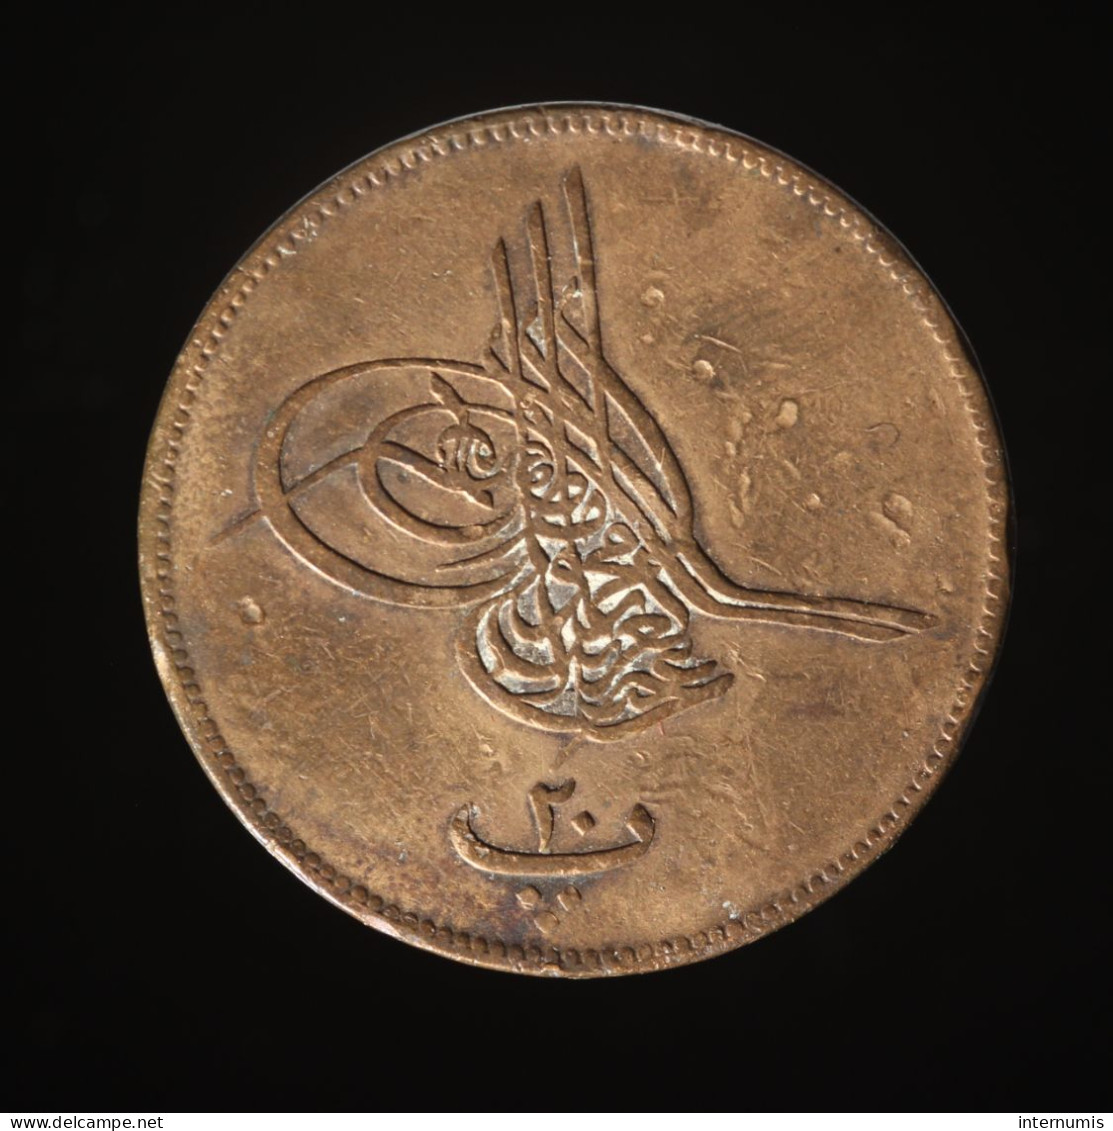  Egypte / Egypt, Abdulaziz, 20 Para, AH 1277//3 (1862), , Bronze, TTB (EF),
KM#244 - Egypte